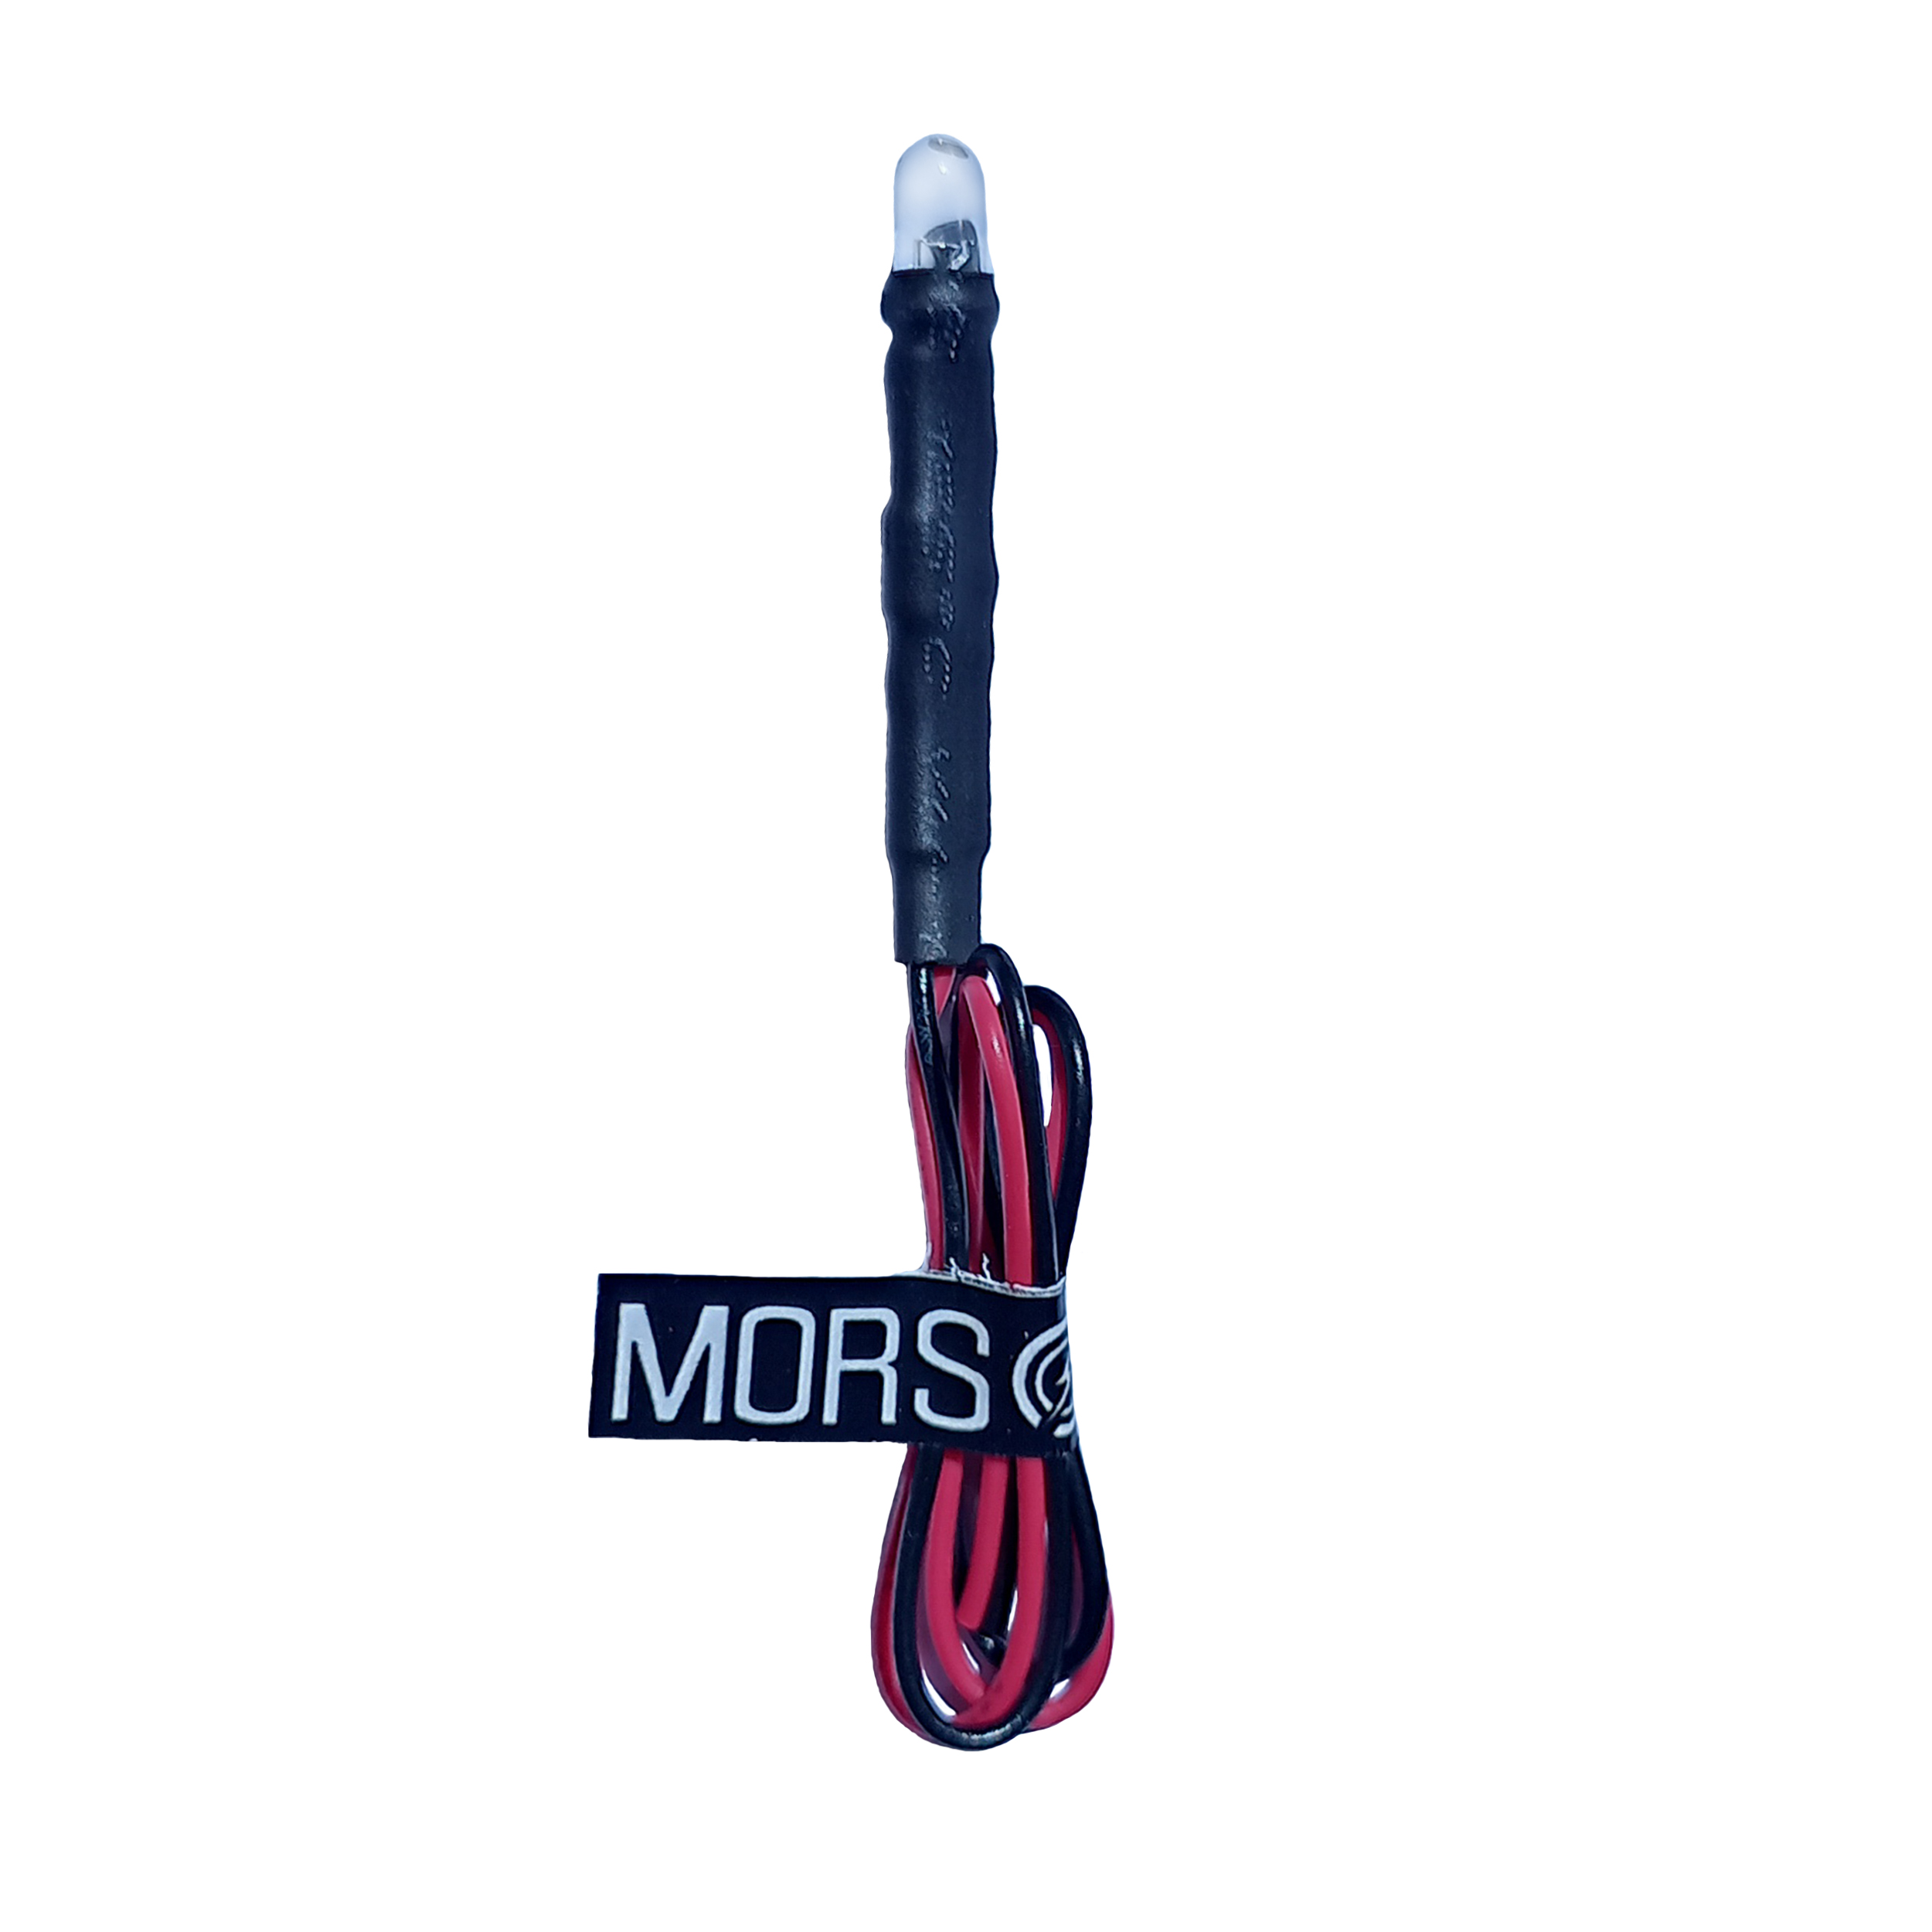 چراغ سیگنال مورس مدلmors-red05-220v مجموعه 15عددی